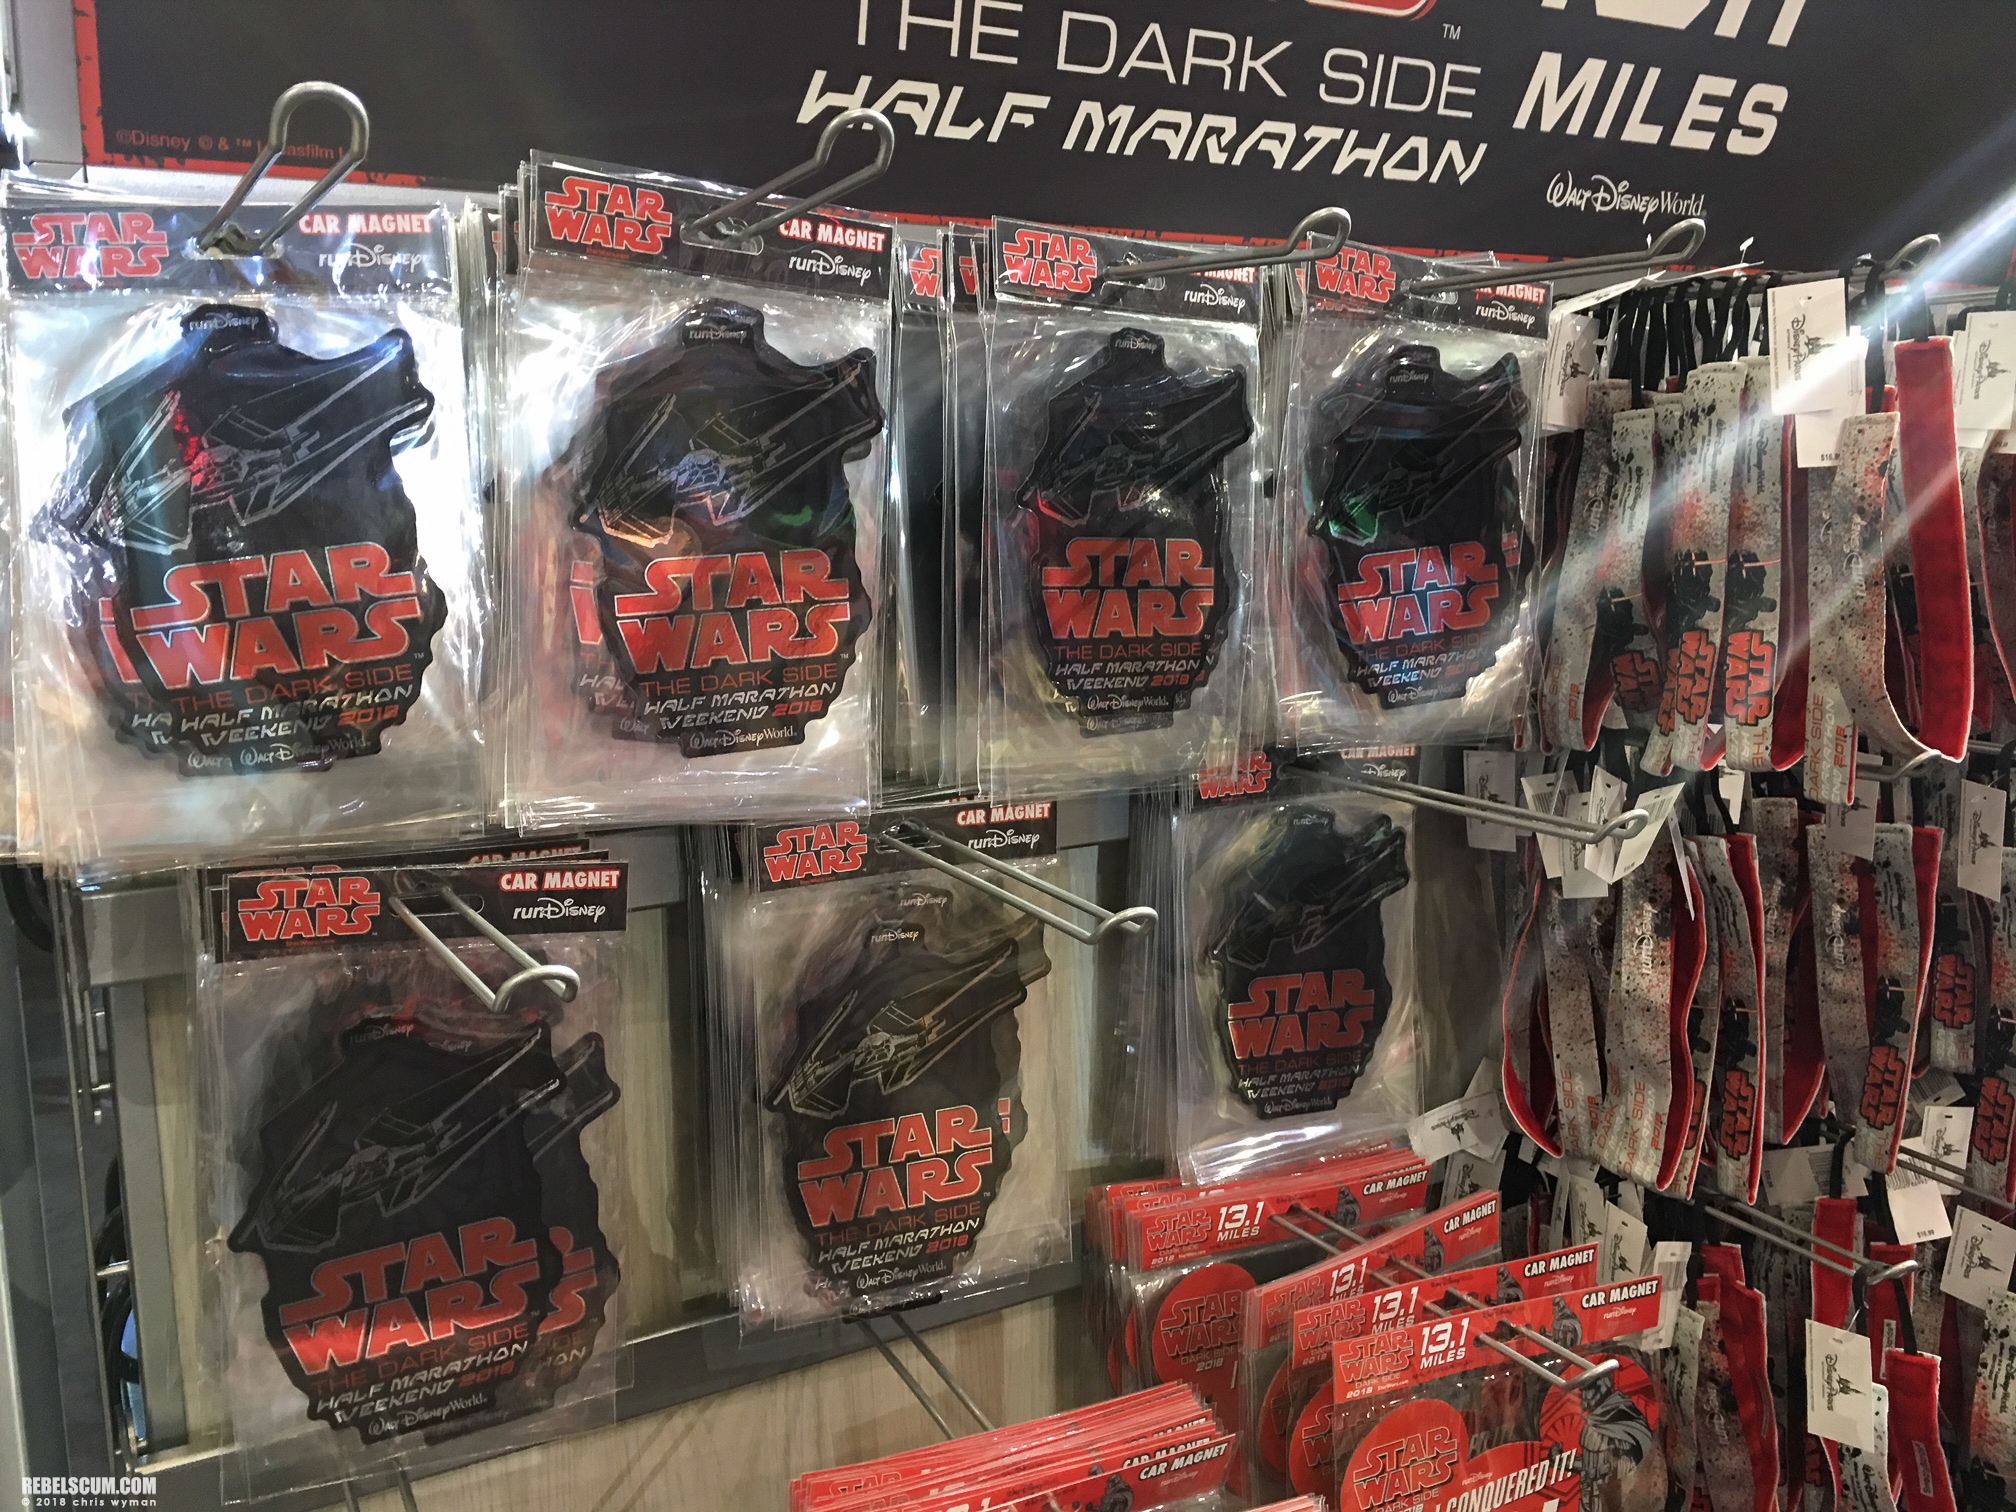 Star-Wars-Half-Marathon-The-Dark-Side-exclusives-products-018.jpg